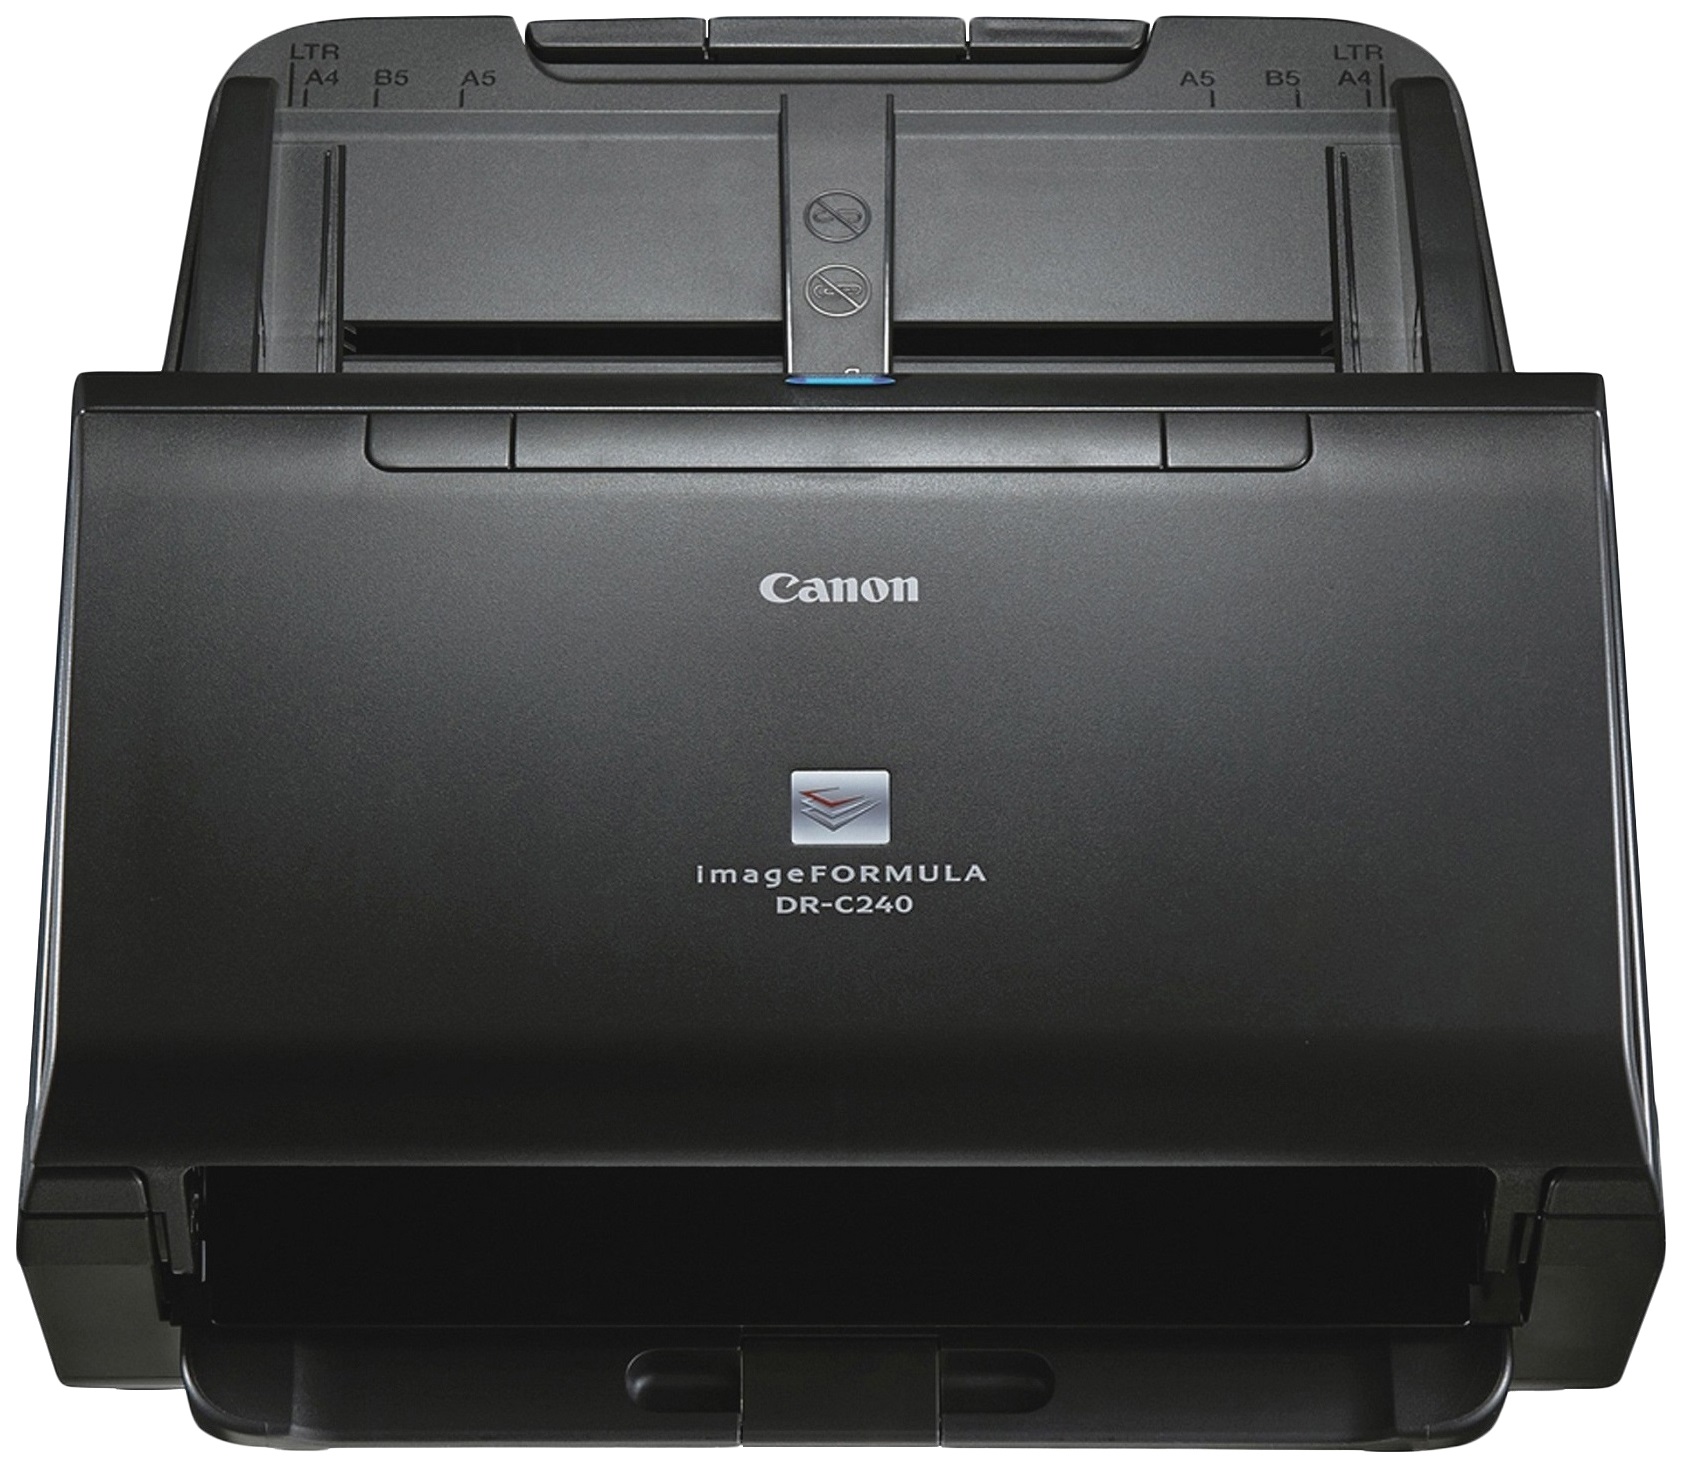 Документ сканер DR-C240, цветной, двухсторонний